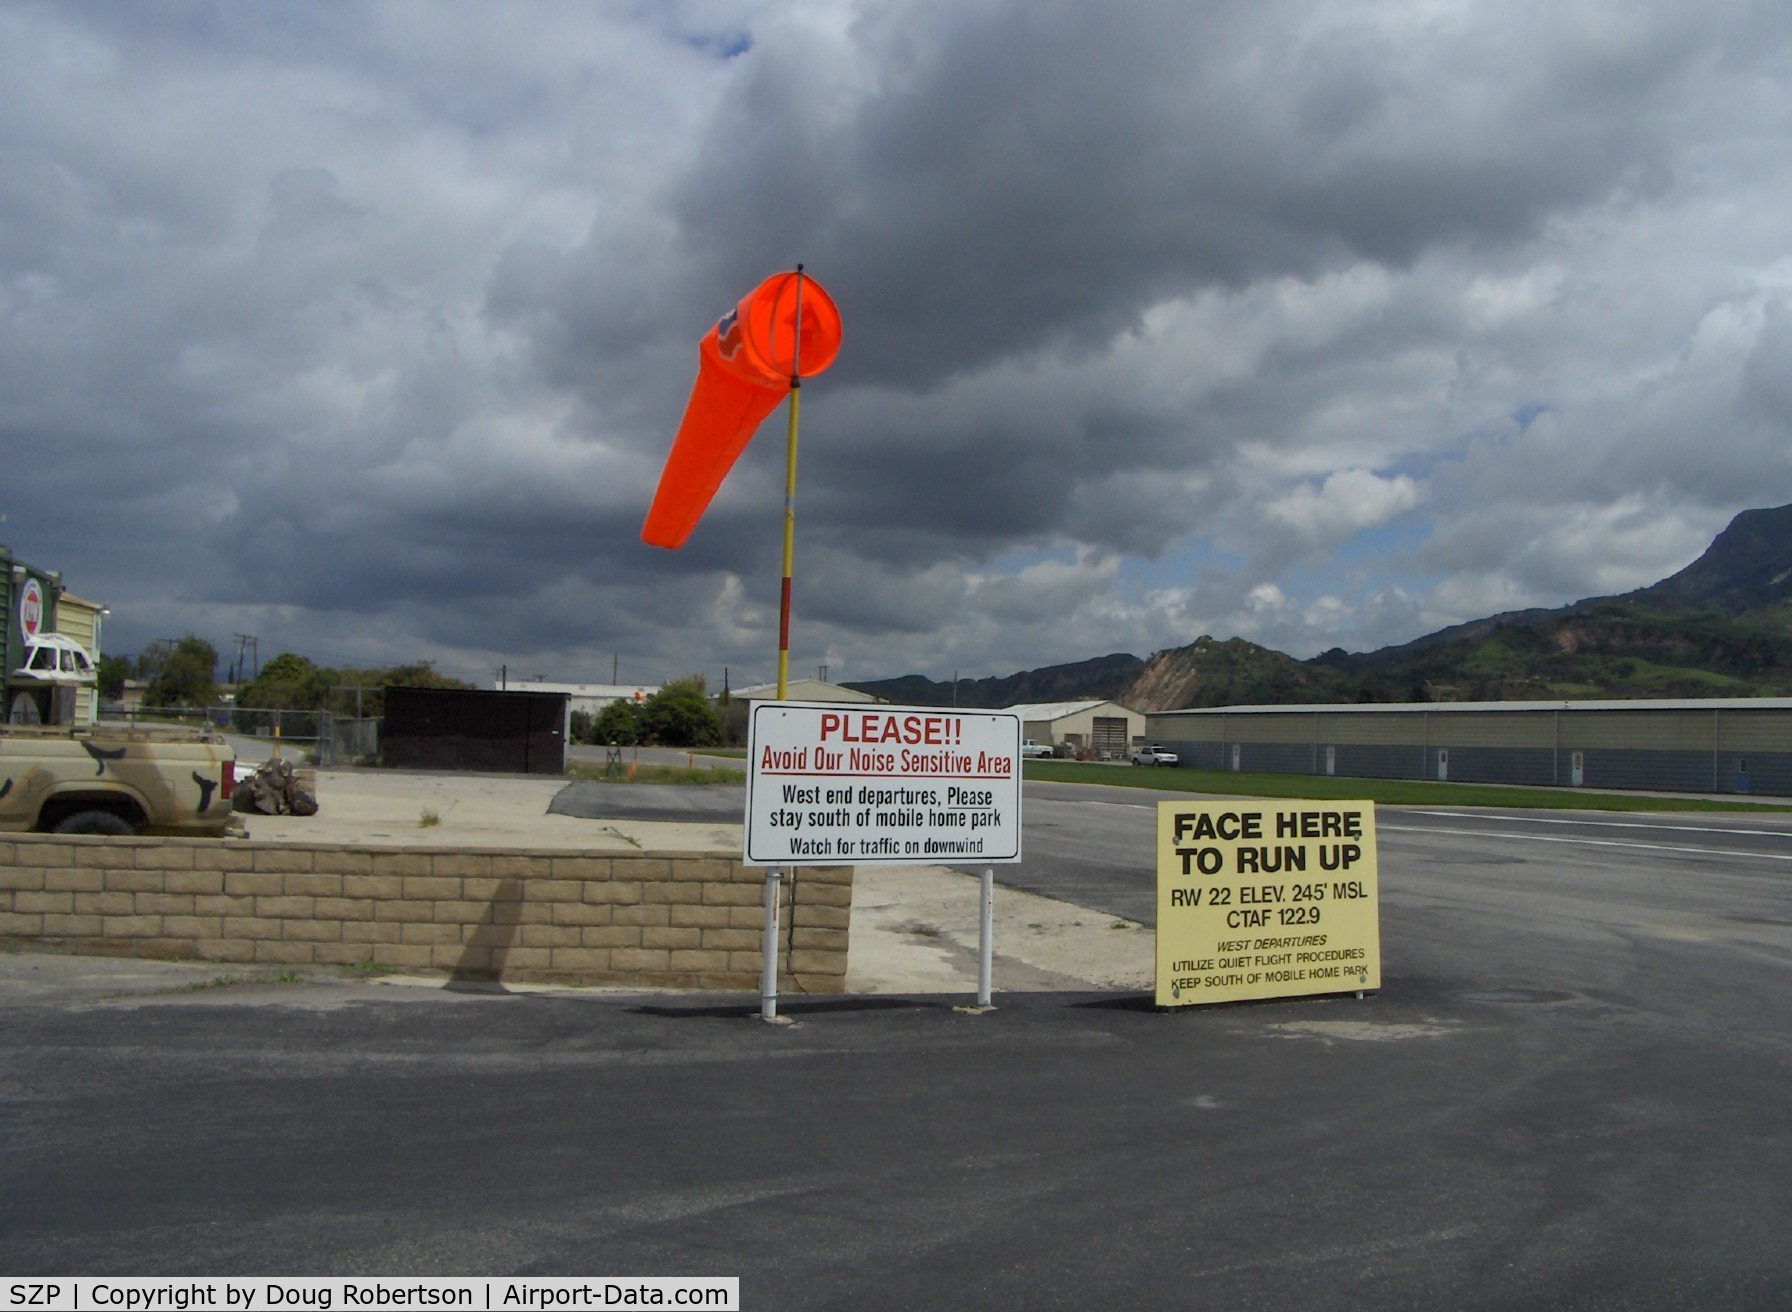 Santa Paula Airport (SZP) - New wind sock, runup & departure instructions Runway 22